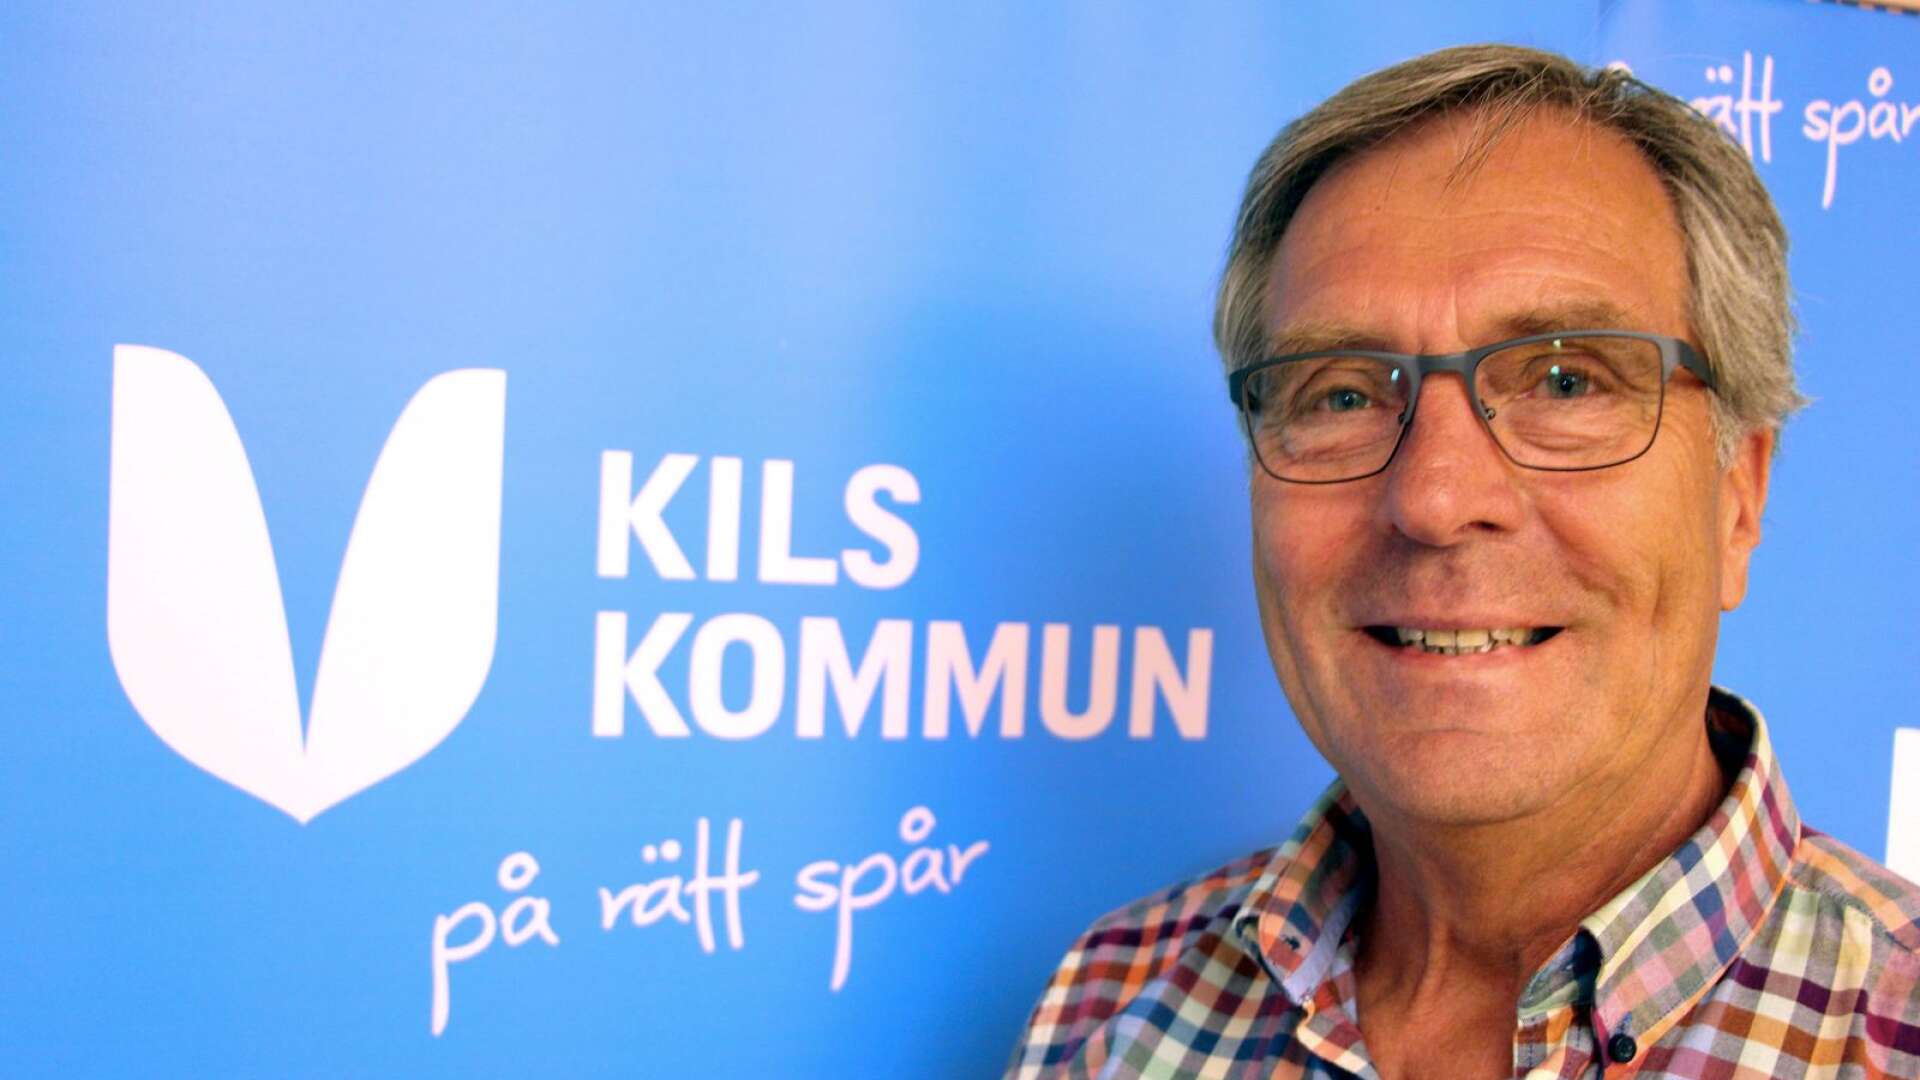 Georg Forsberg (C) debuterar som dagvärd på årets Frykerudsdagen i Kil.